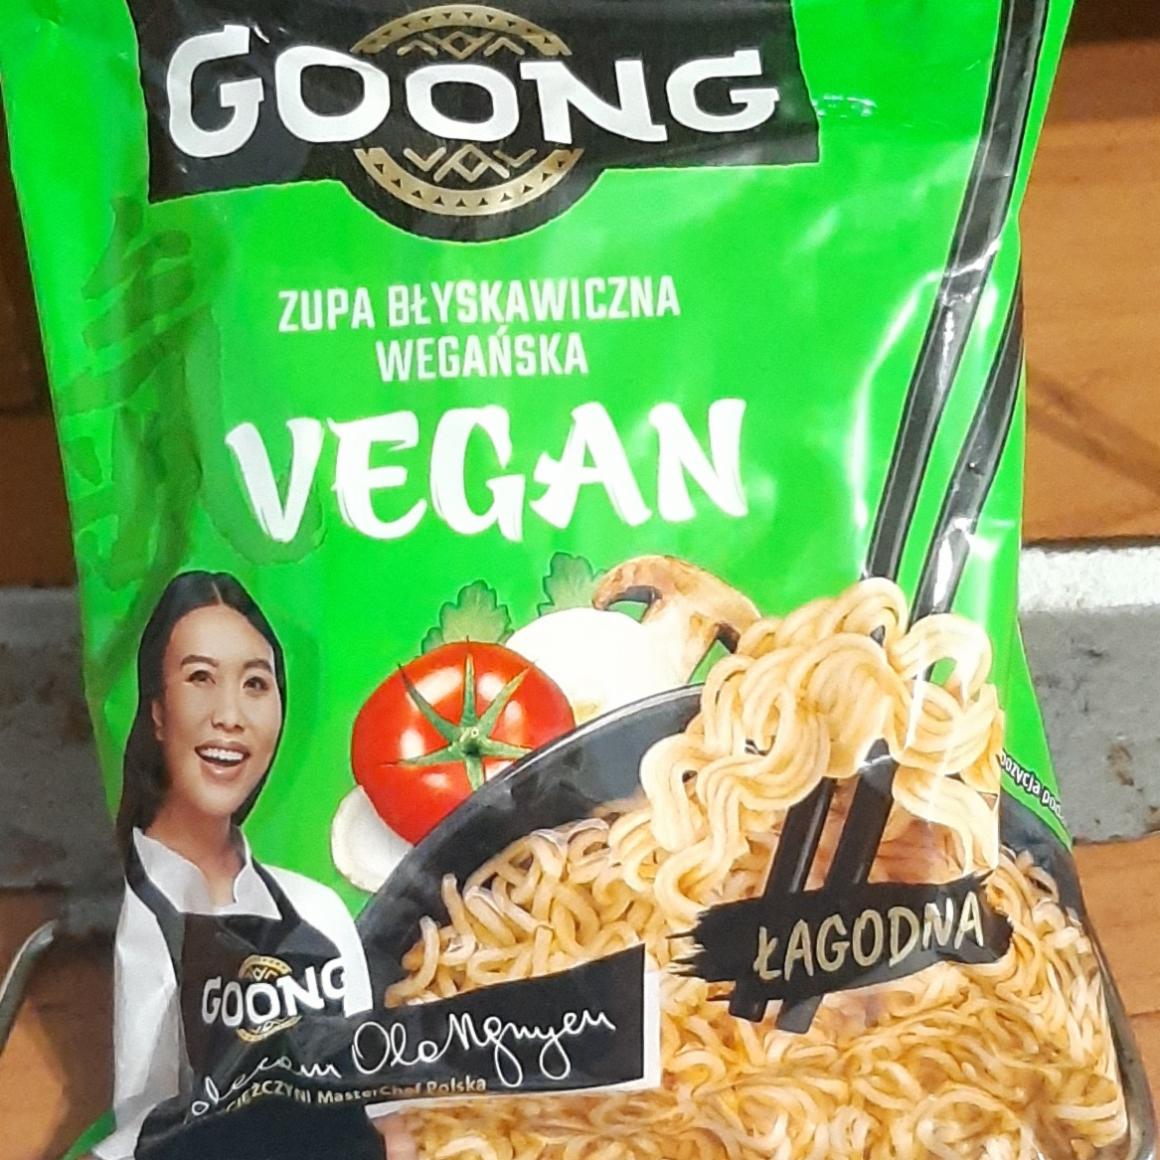 Zdjęcia - Zupa błyskawiczna wegetariańska Goong vegan